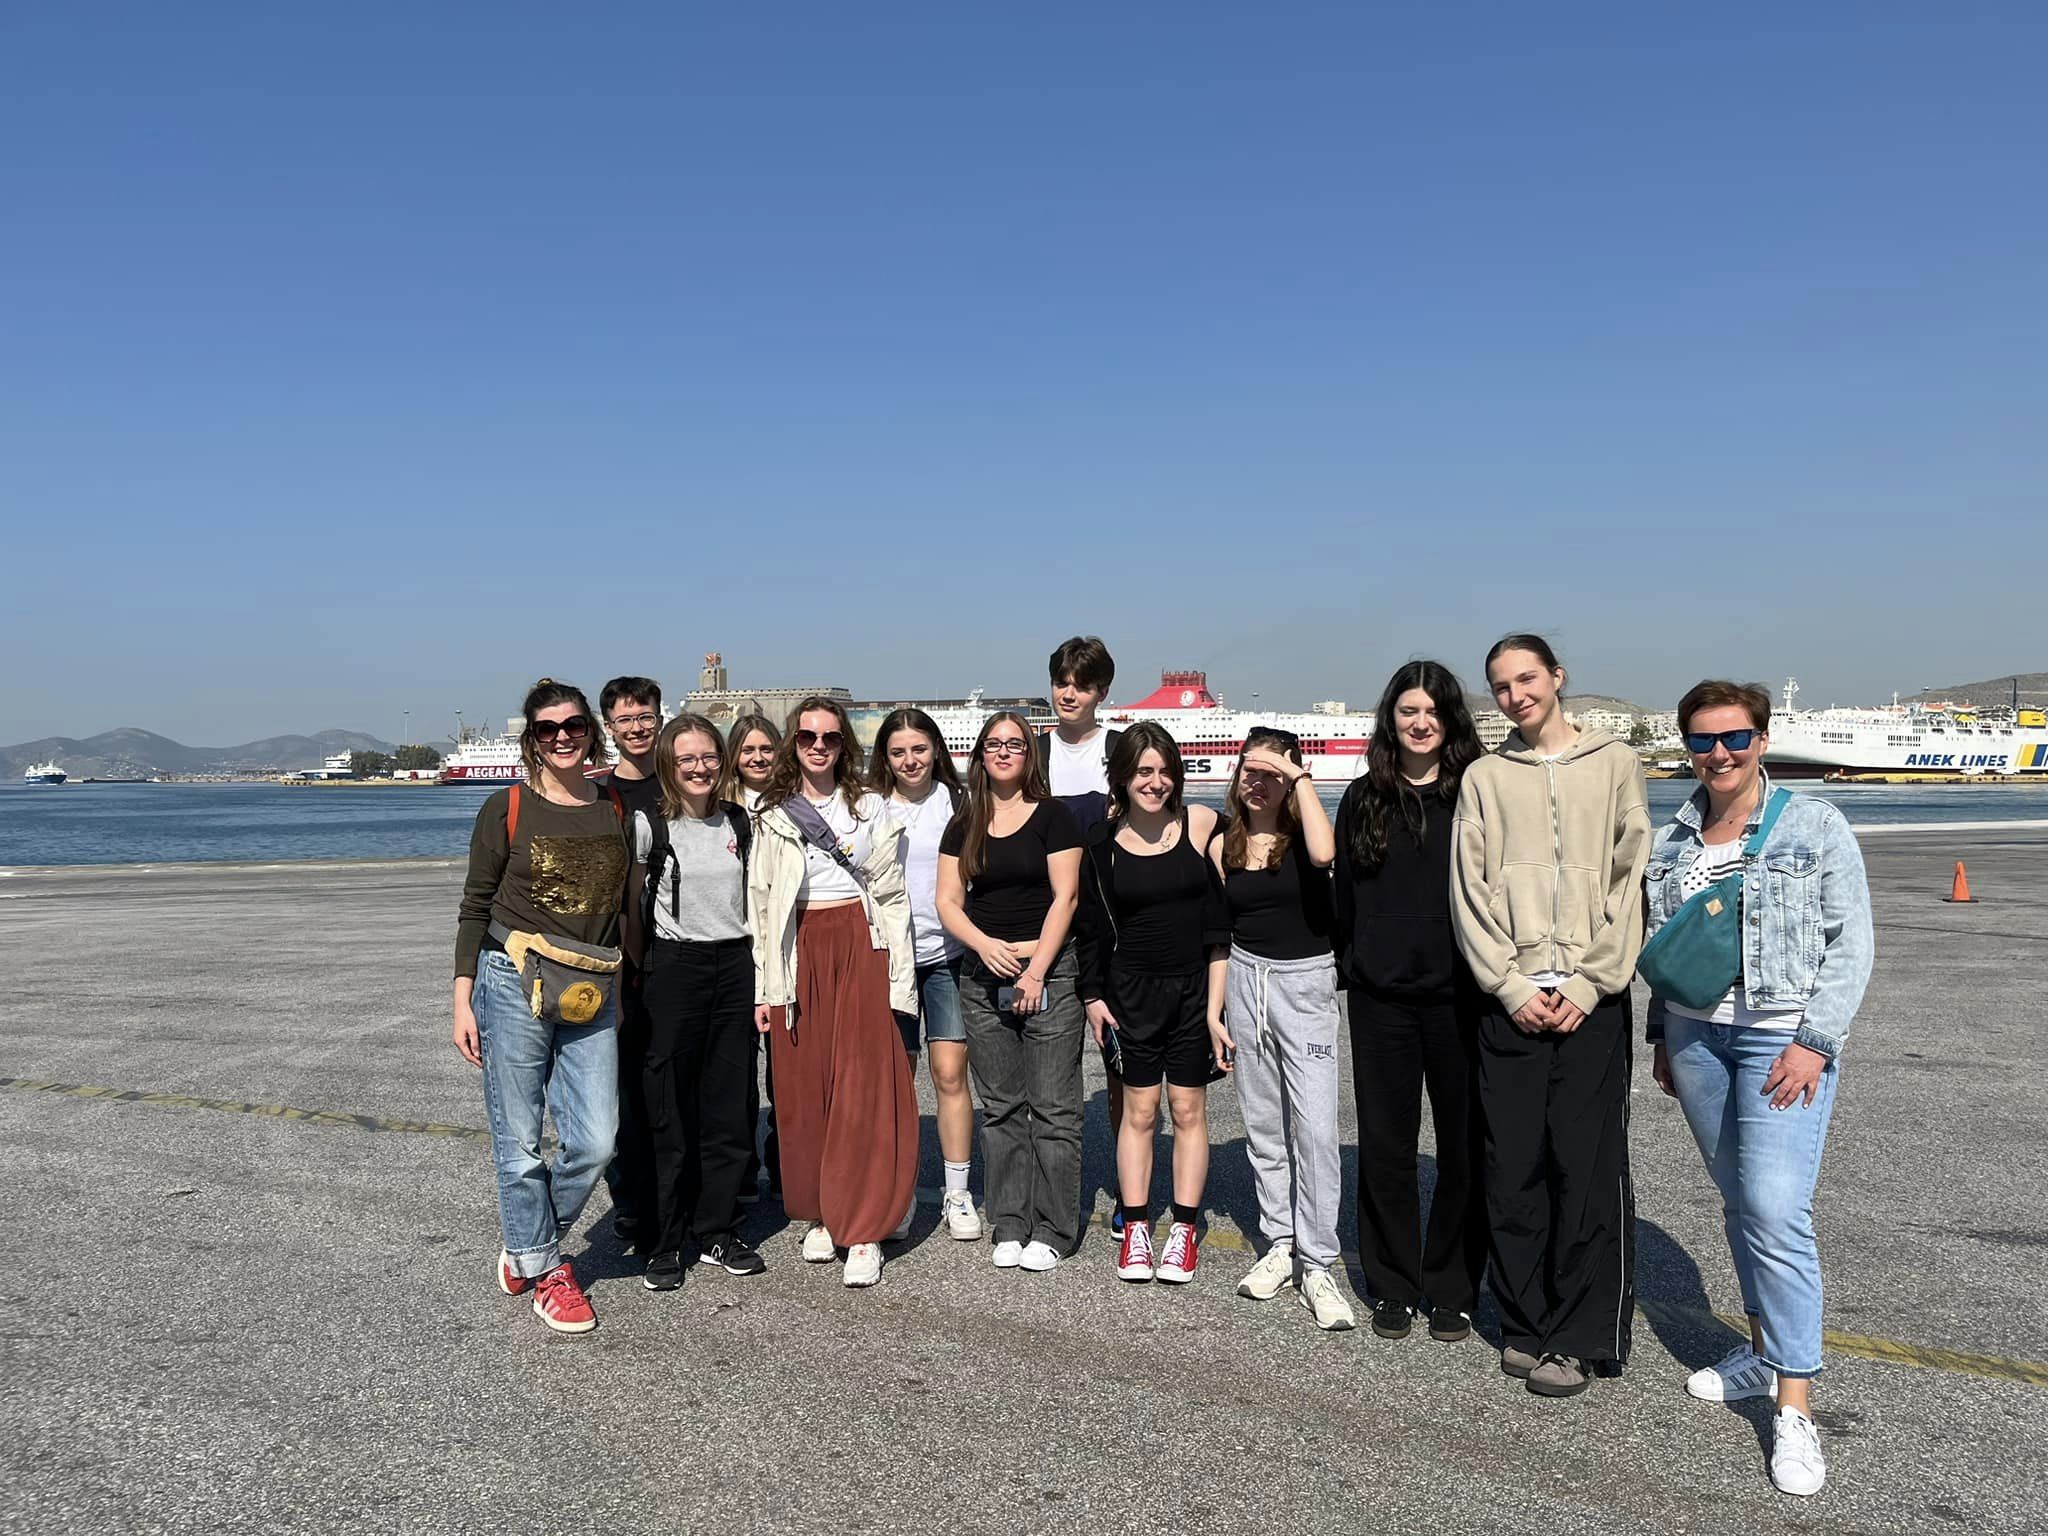 W dniach 14-21 kwietnia grupa 11 uczniów pod opieką p. Agnieszki Gemborys i p. Katarzyny Ścisłowicz spędziła wspaniałe chwile w Grecji na pięknej wyspie Sifnos. Wyjazd odbył się w ramach projektu Erasmus+ „Troskliwa Szkoła - Zjednoczeni w Różnorodności,”, zdjęcie grupowe